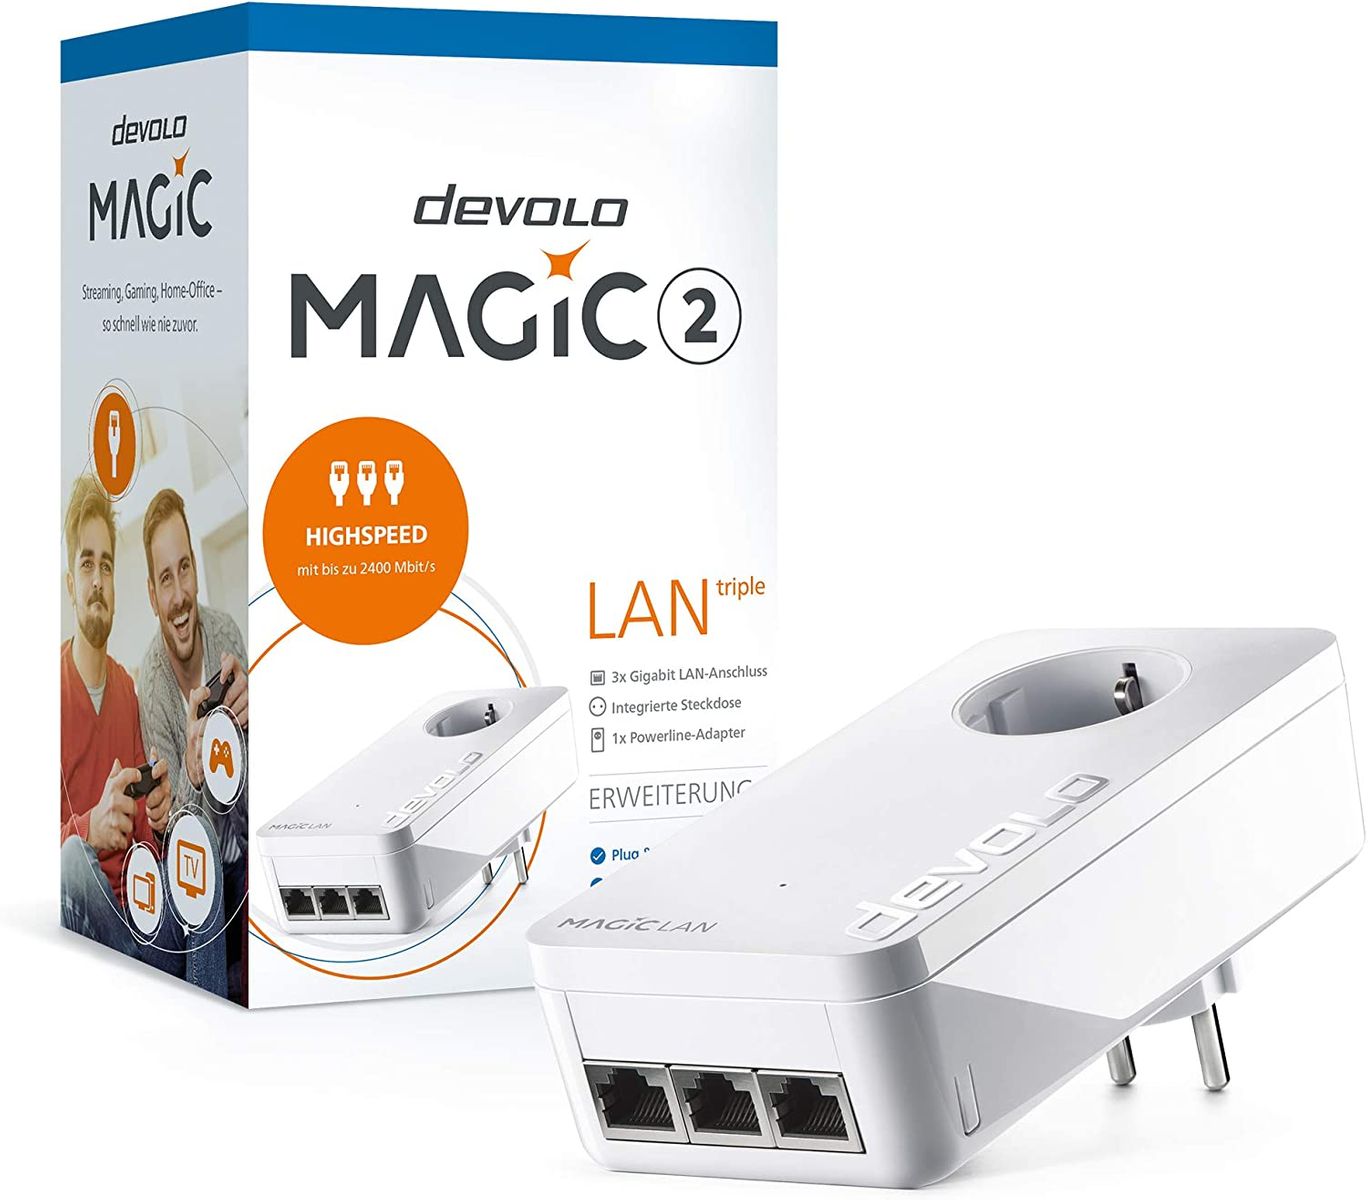 devolo LAN Powerline Adapter Magic 2 LAN triple Erweiterungsadapter -bis 2.400 Mbit/s ideal für Gaming 3x Gigabit LAN Anschluss dLAN 2.0 ohne WLAN Triple+ Erweiterungsadapter Magic 2 LAN